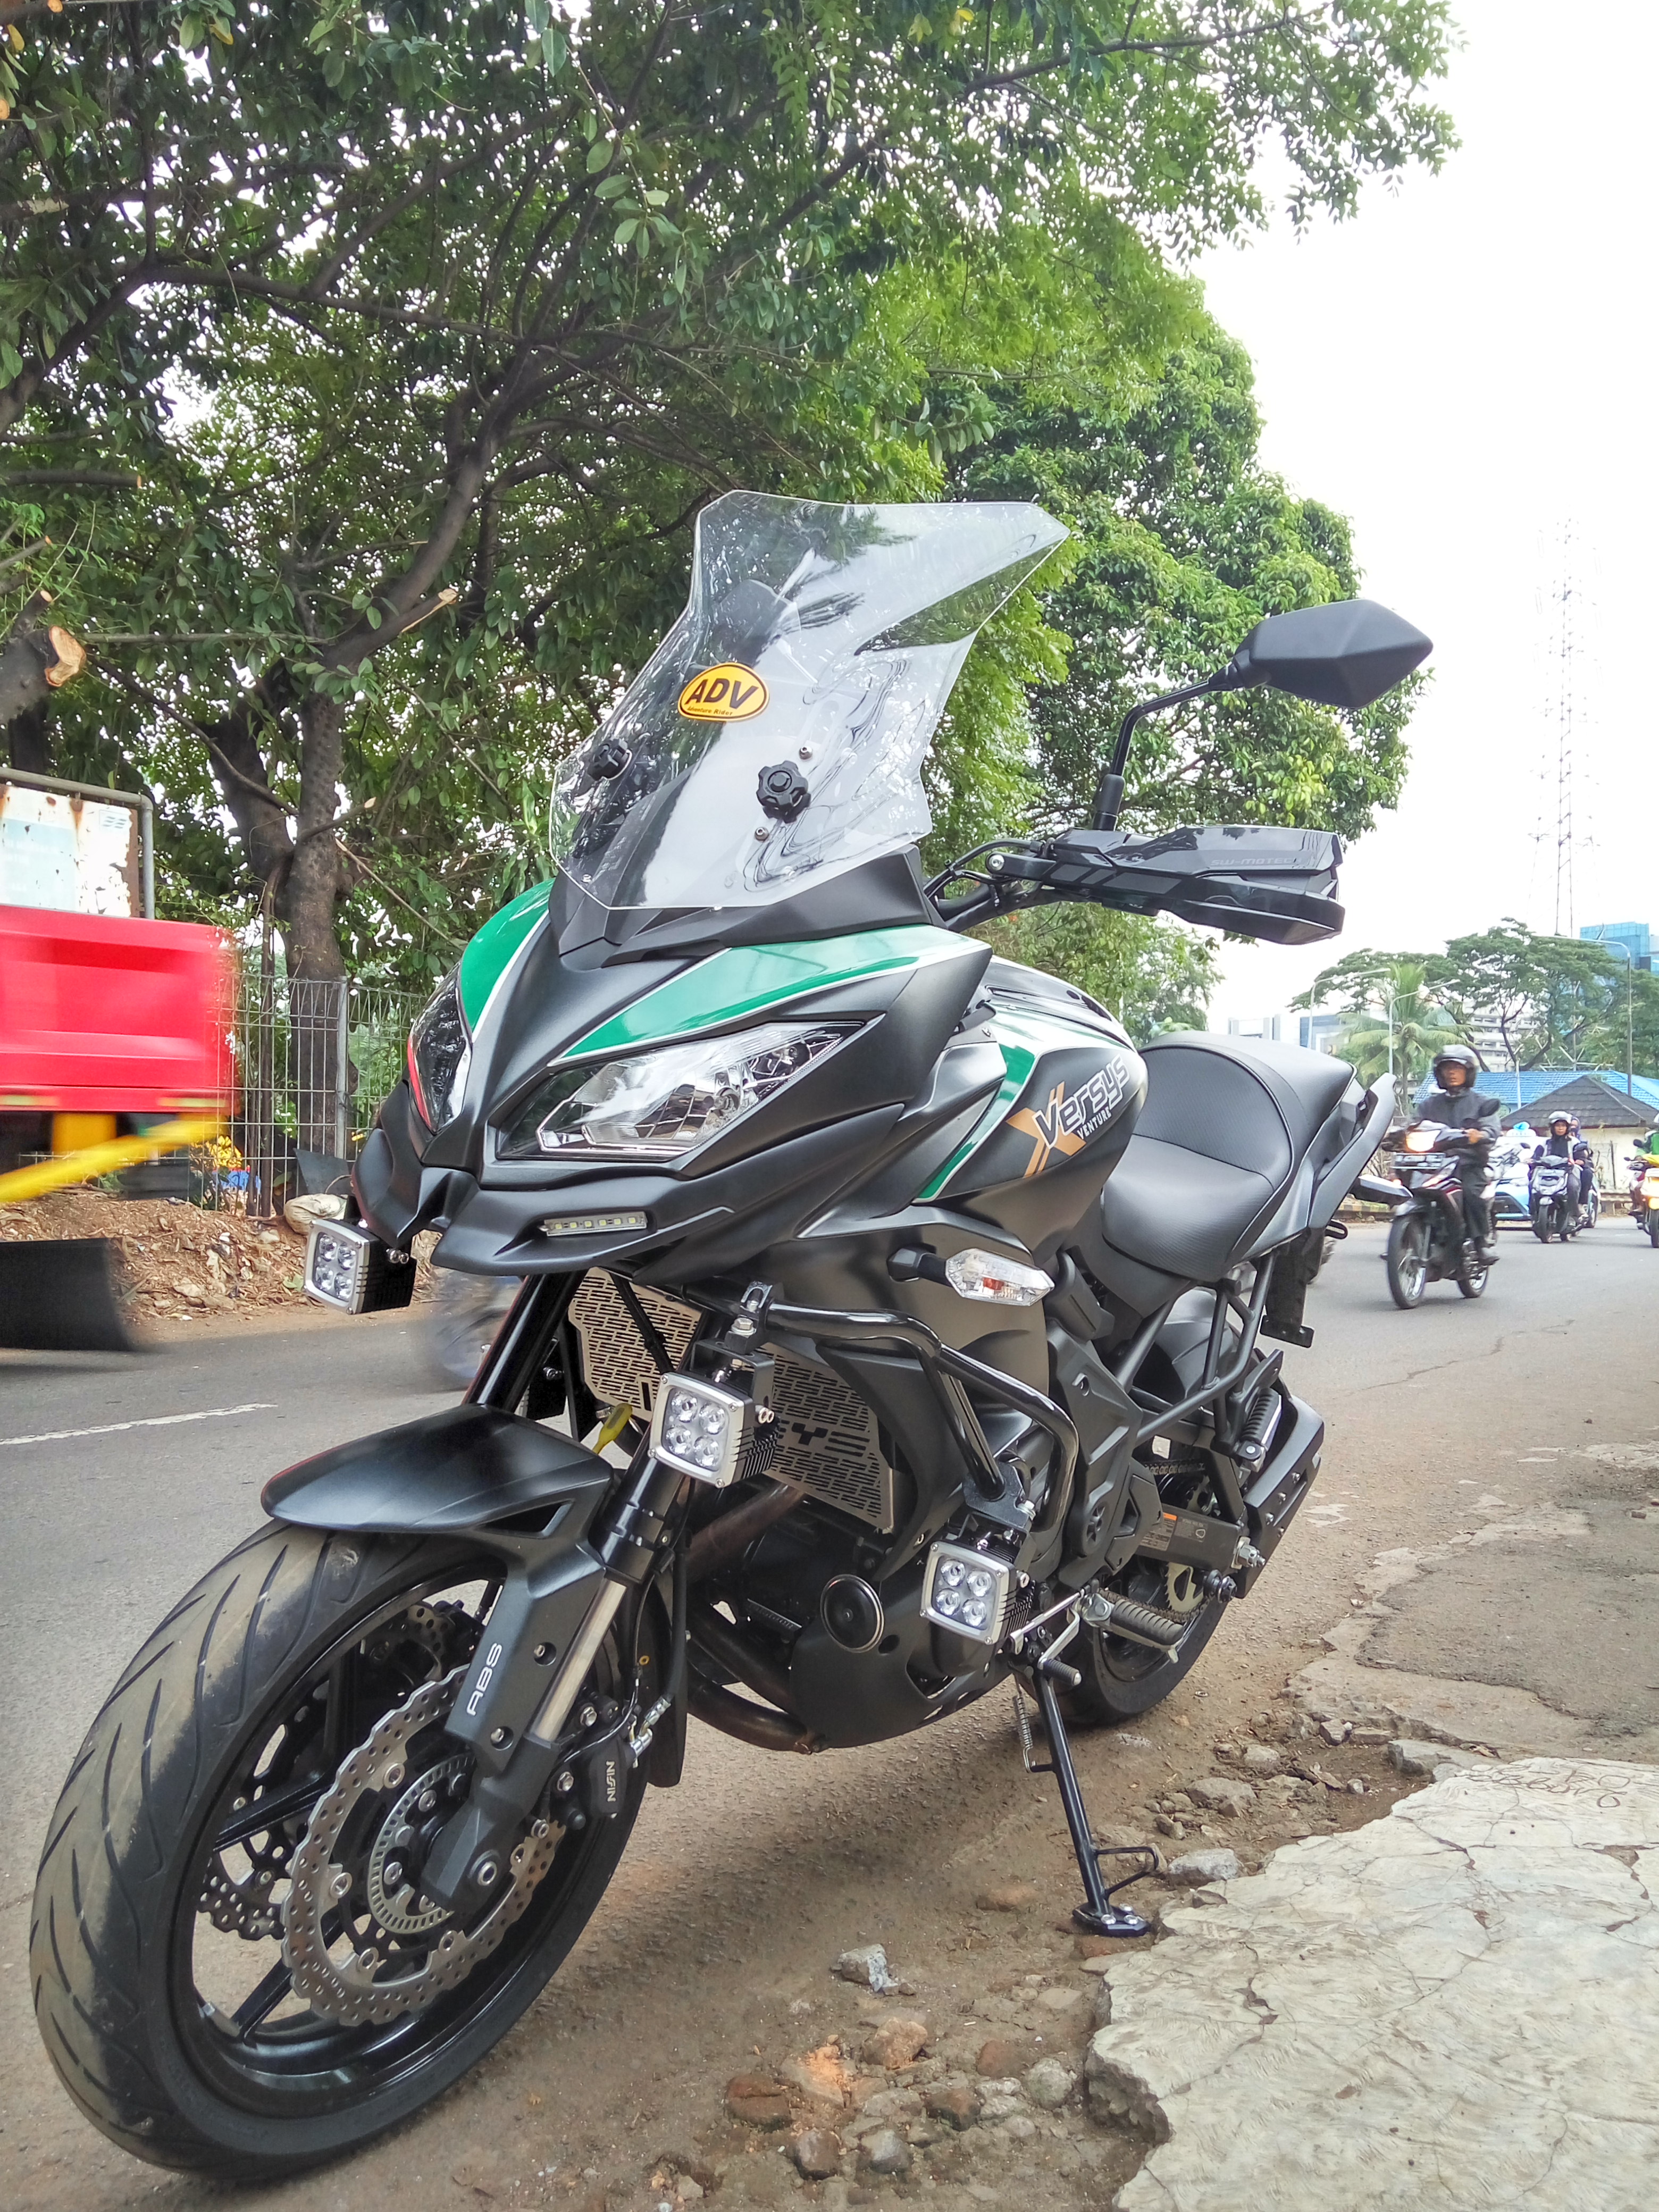 Modifikasi Kawasaki Versys 650 2015 Siap Touring Rial On Motorcycle